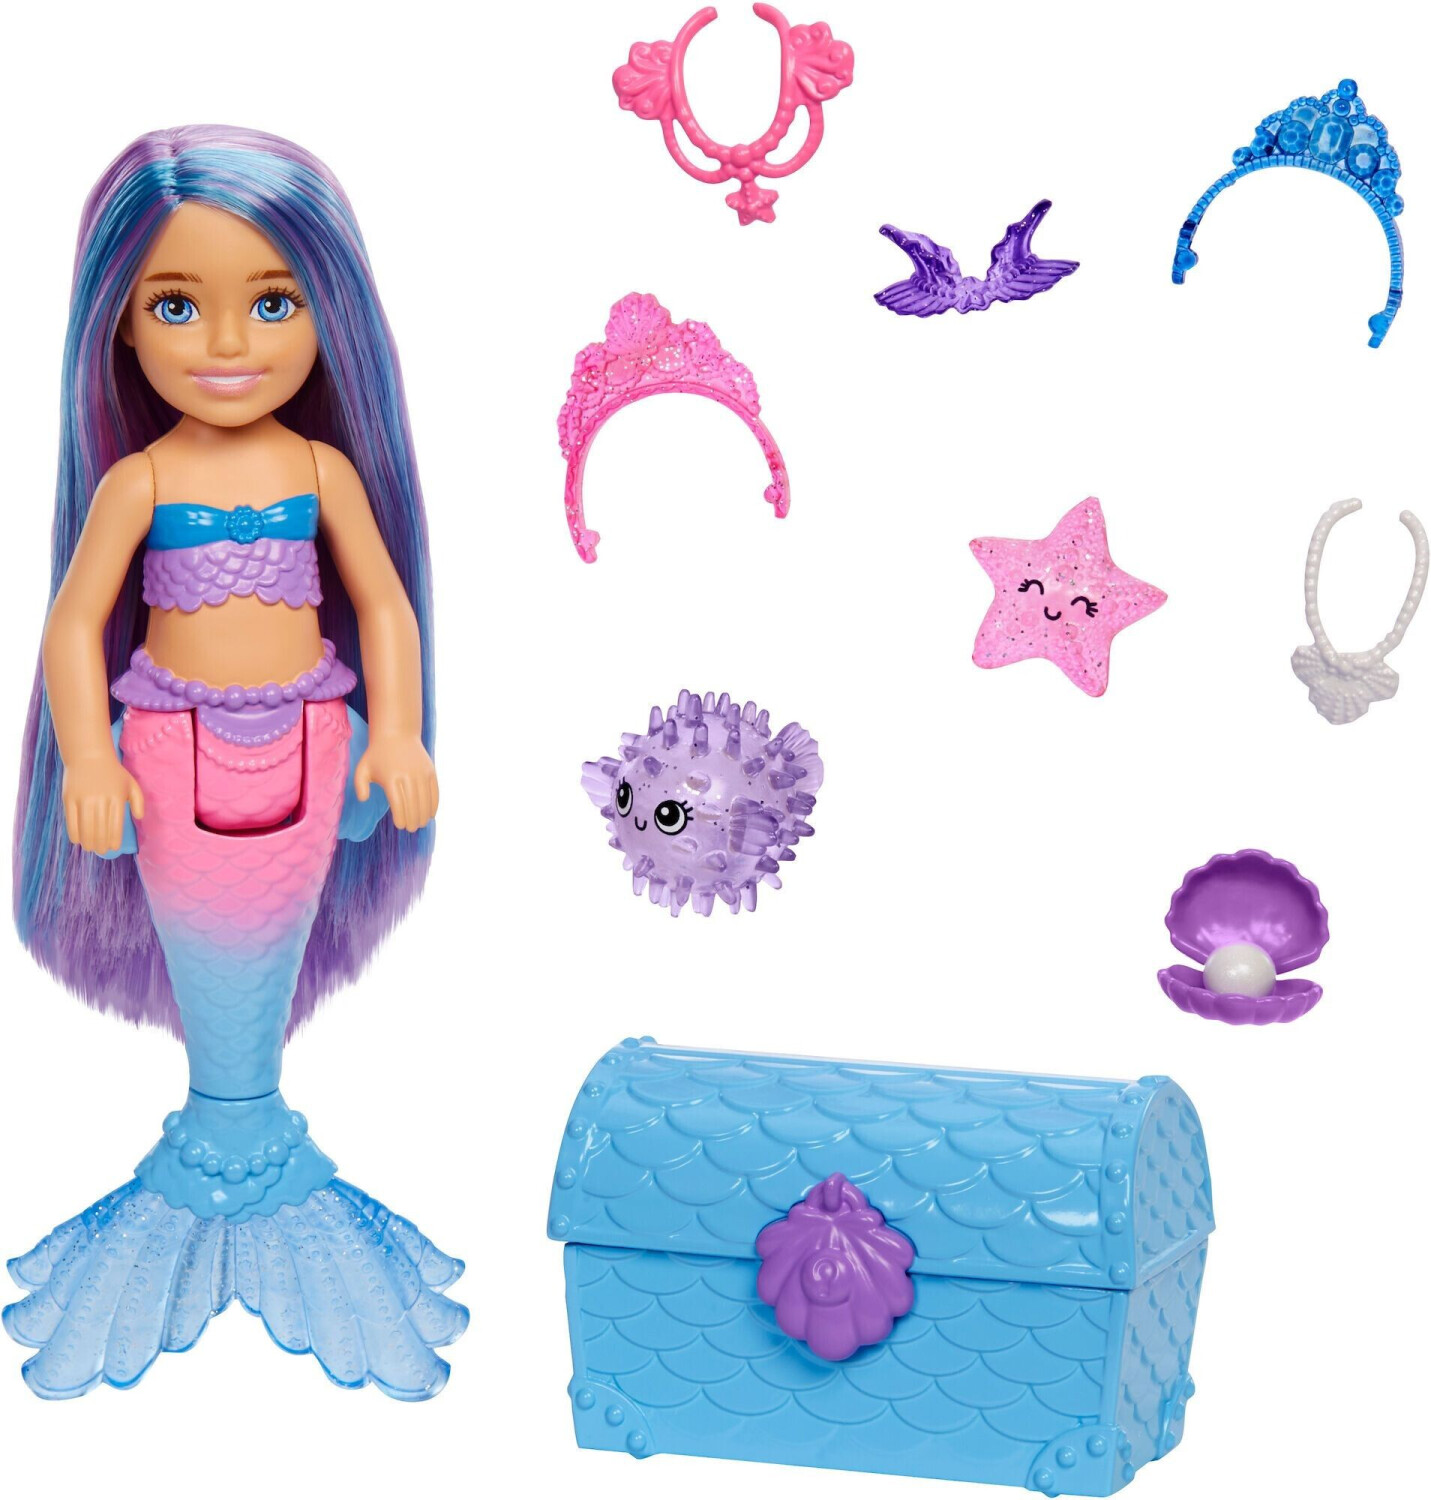 Barbie Mermaid Power bateau, poupées et accessoires (HHG60) au